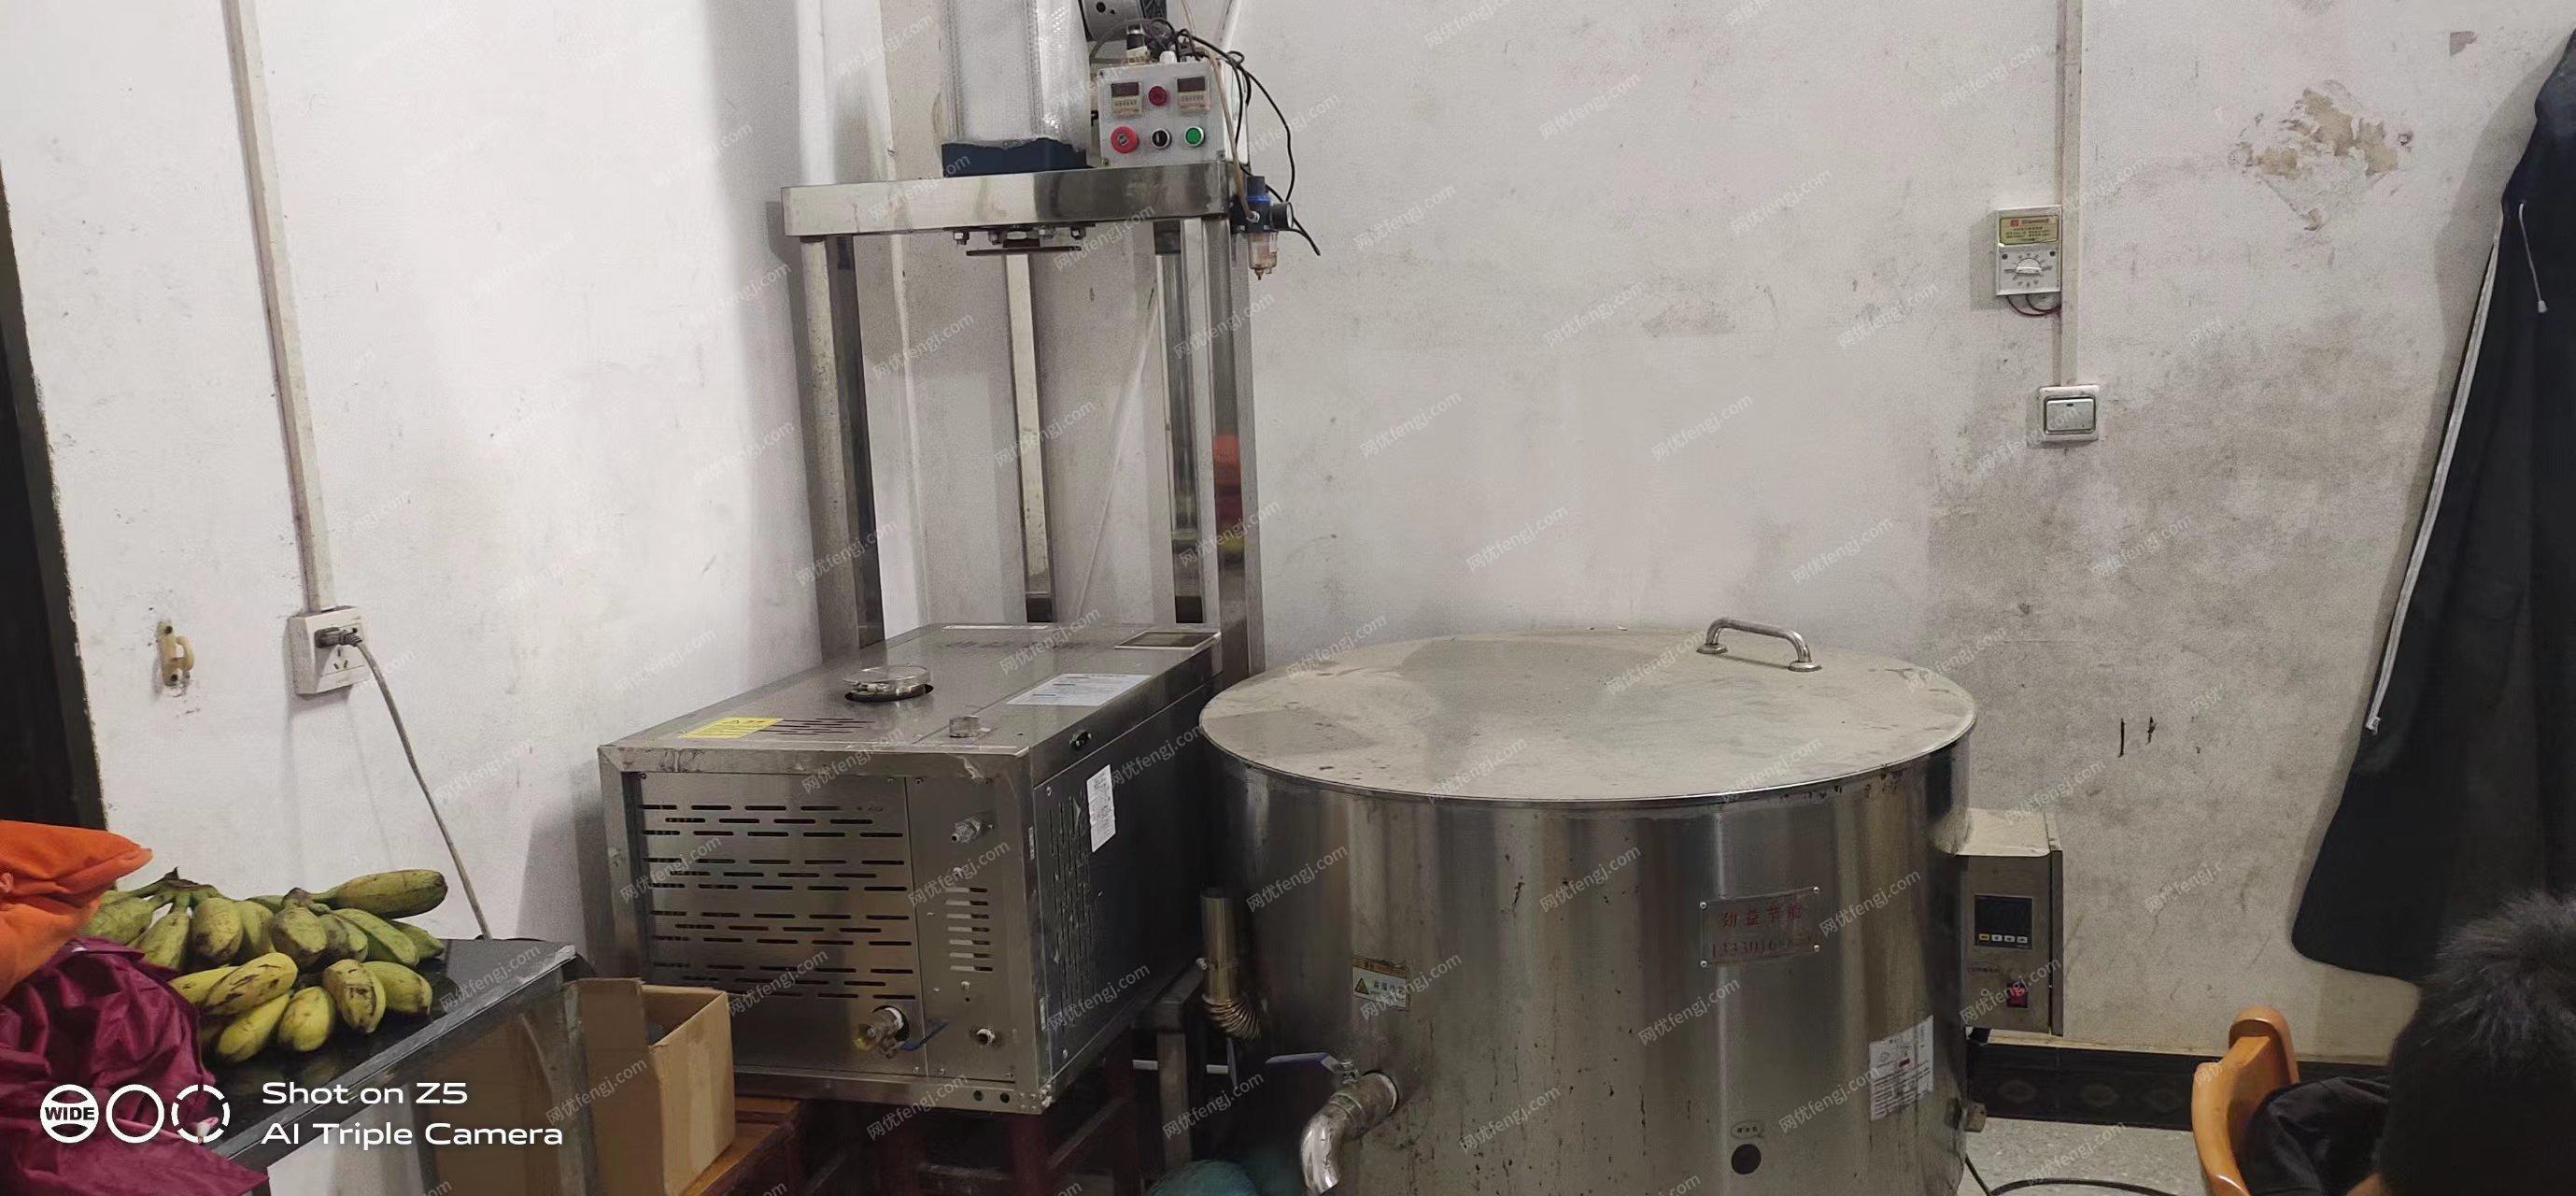 赣州地区处理压榨机、燃气锅、蒸机、耐高温打浆料桶6个、大桶2个等豆制品设备1套，详见图